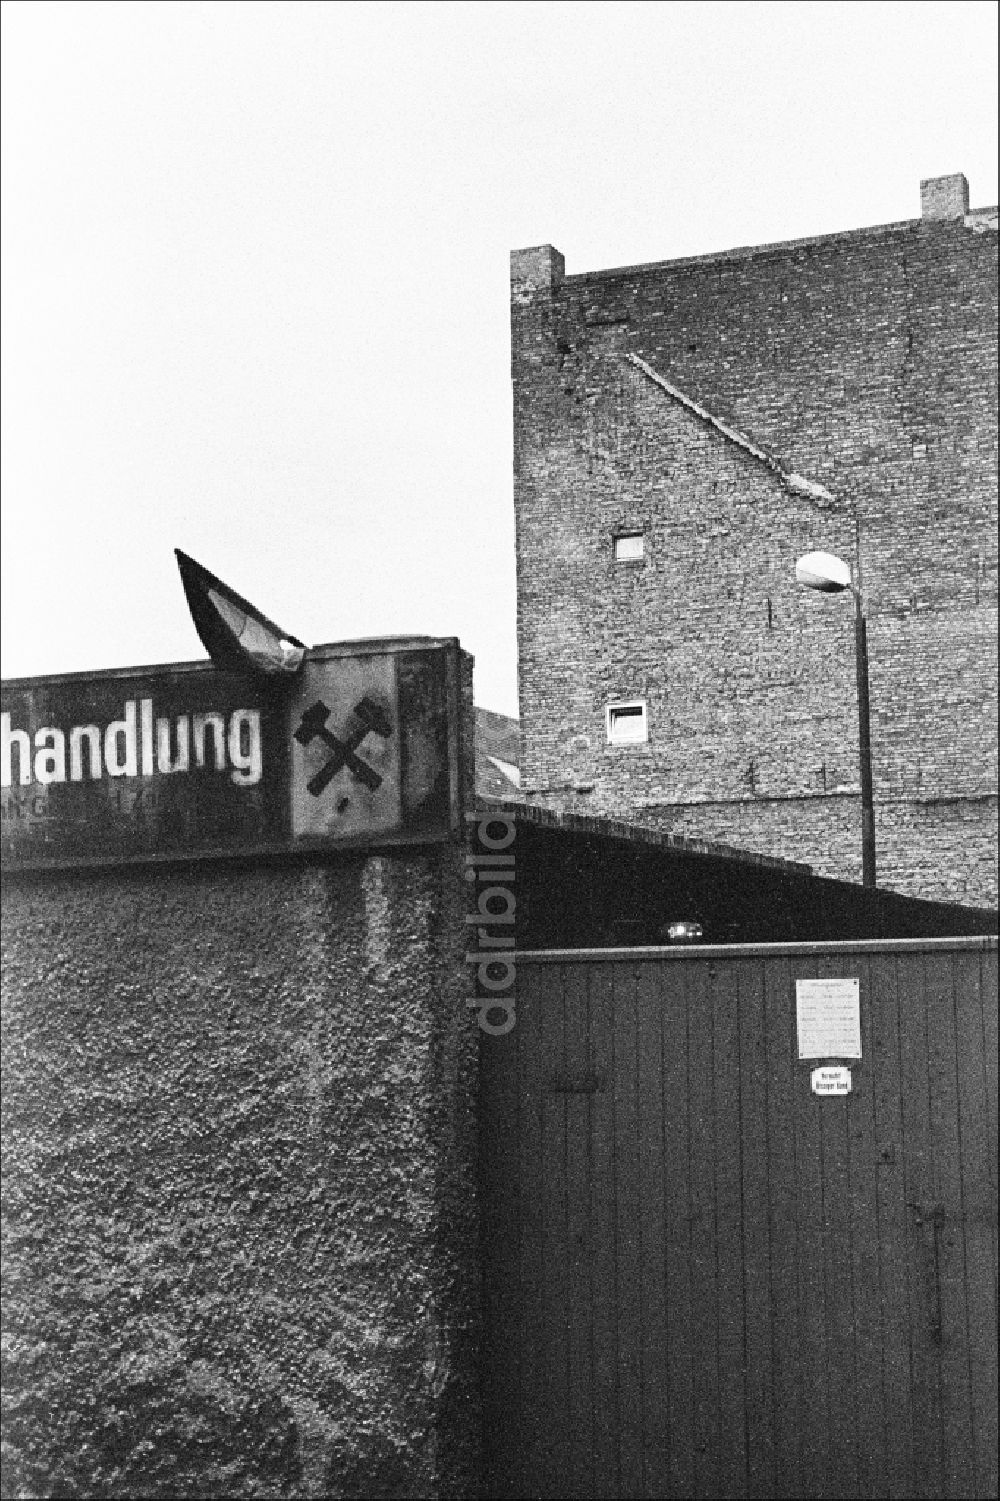 DDR-Fotoarchiv: Berlin - Eingangsbereich eines Kohlehandels im Ortsteil Mitte in Berlin in der DDR